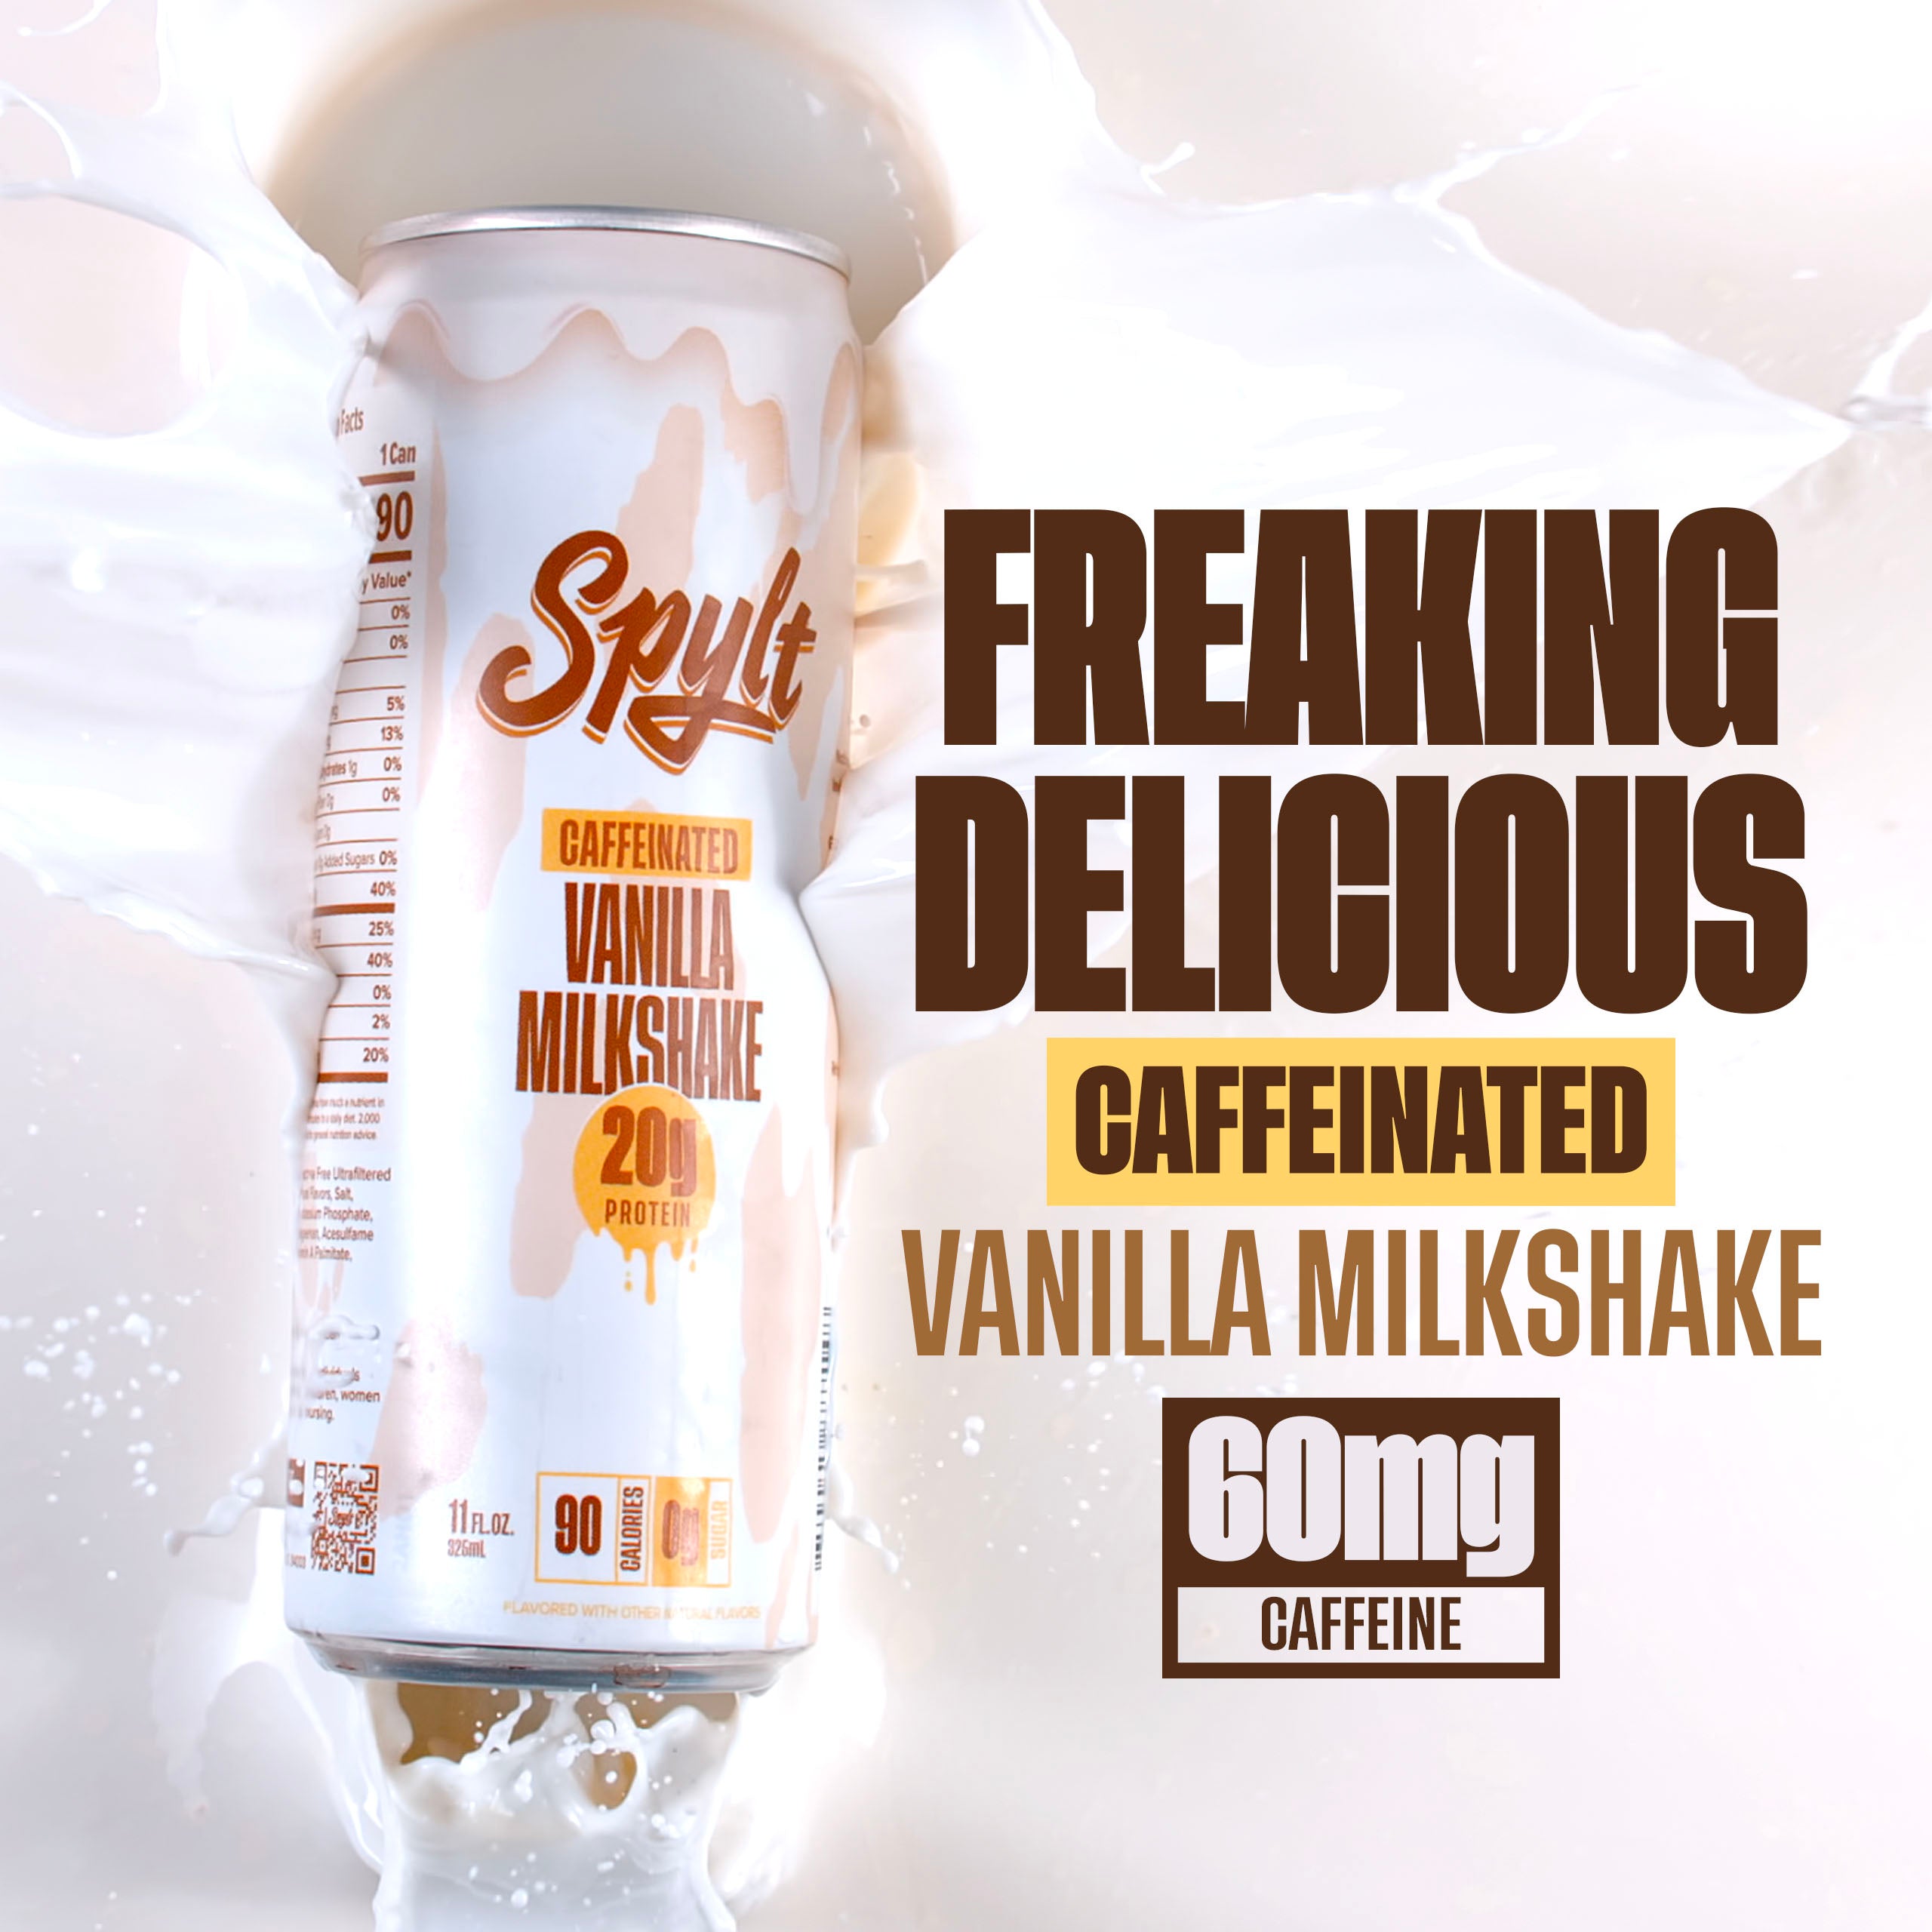 SPYLT Vanilla Milkshake